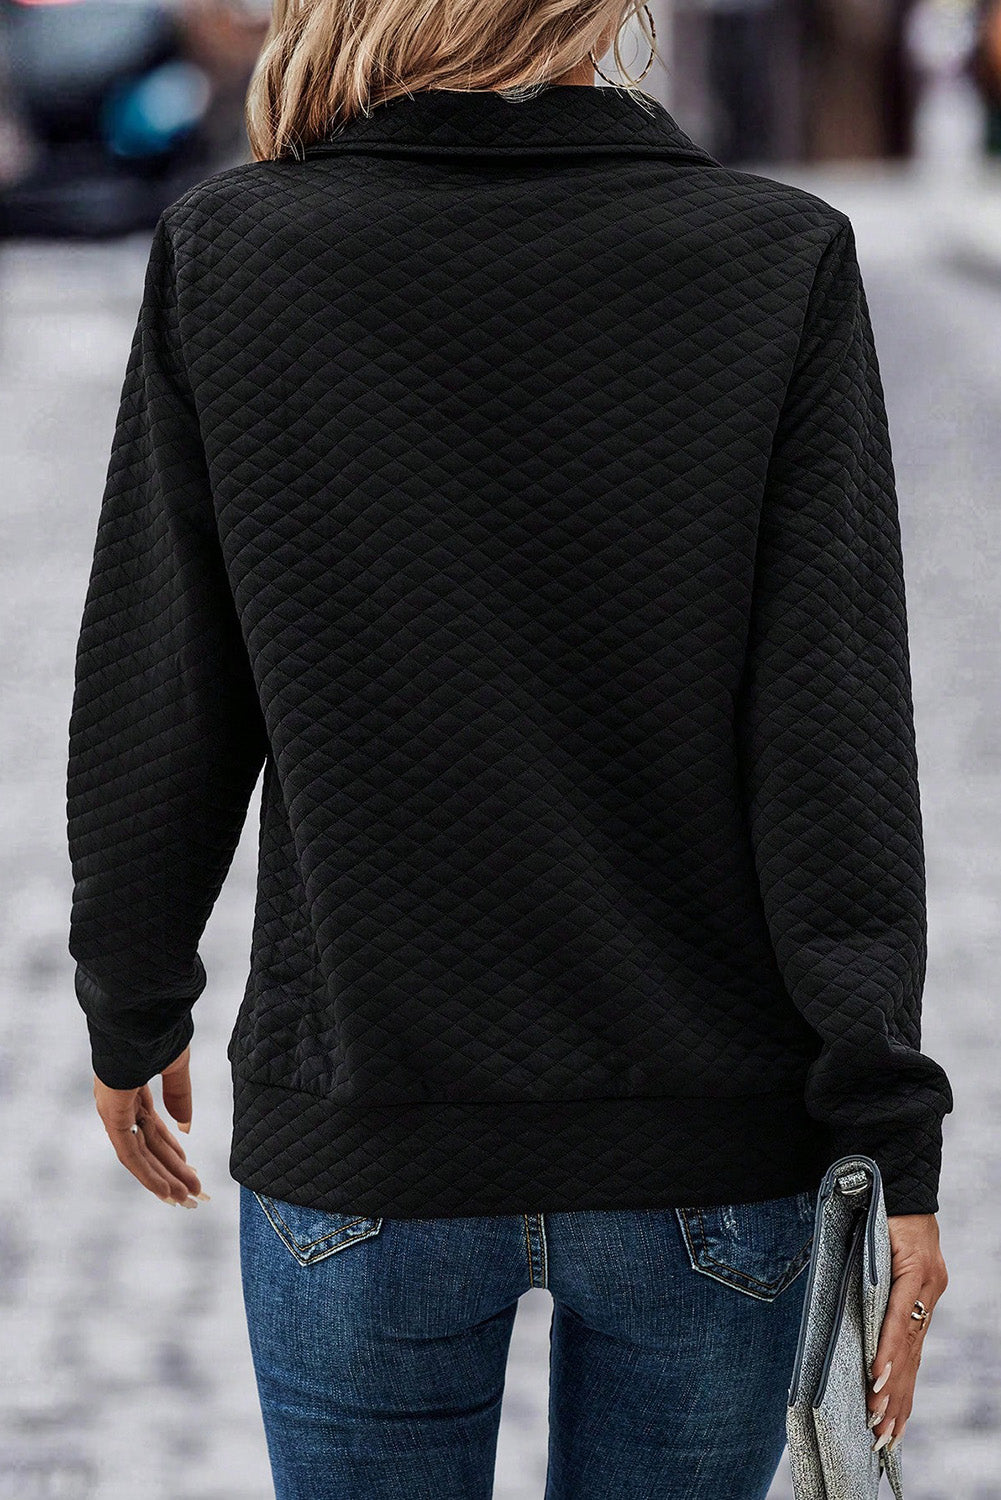 Black Solid Color Half Zipper Pullover Sweatshirt